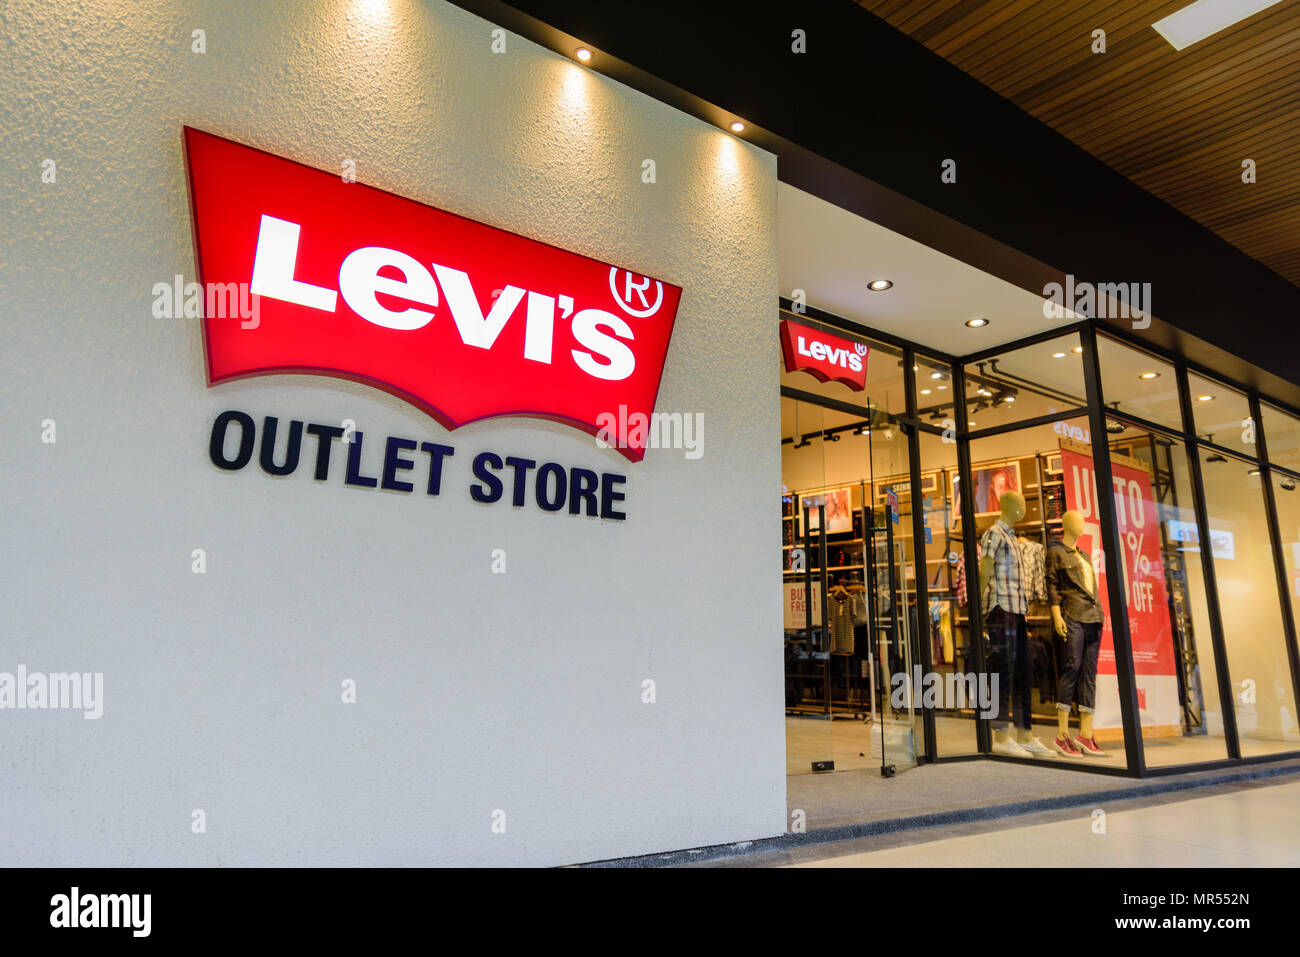 Levis Store Banque d'image et photos - Page 4 - Alamy